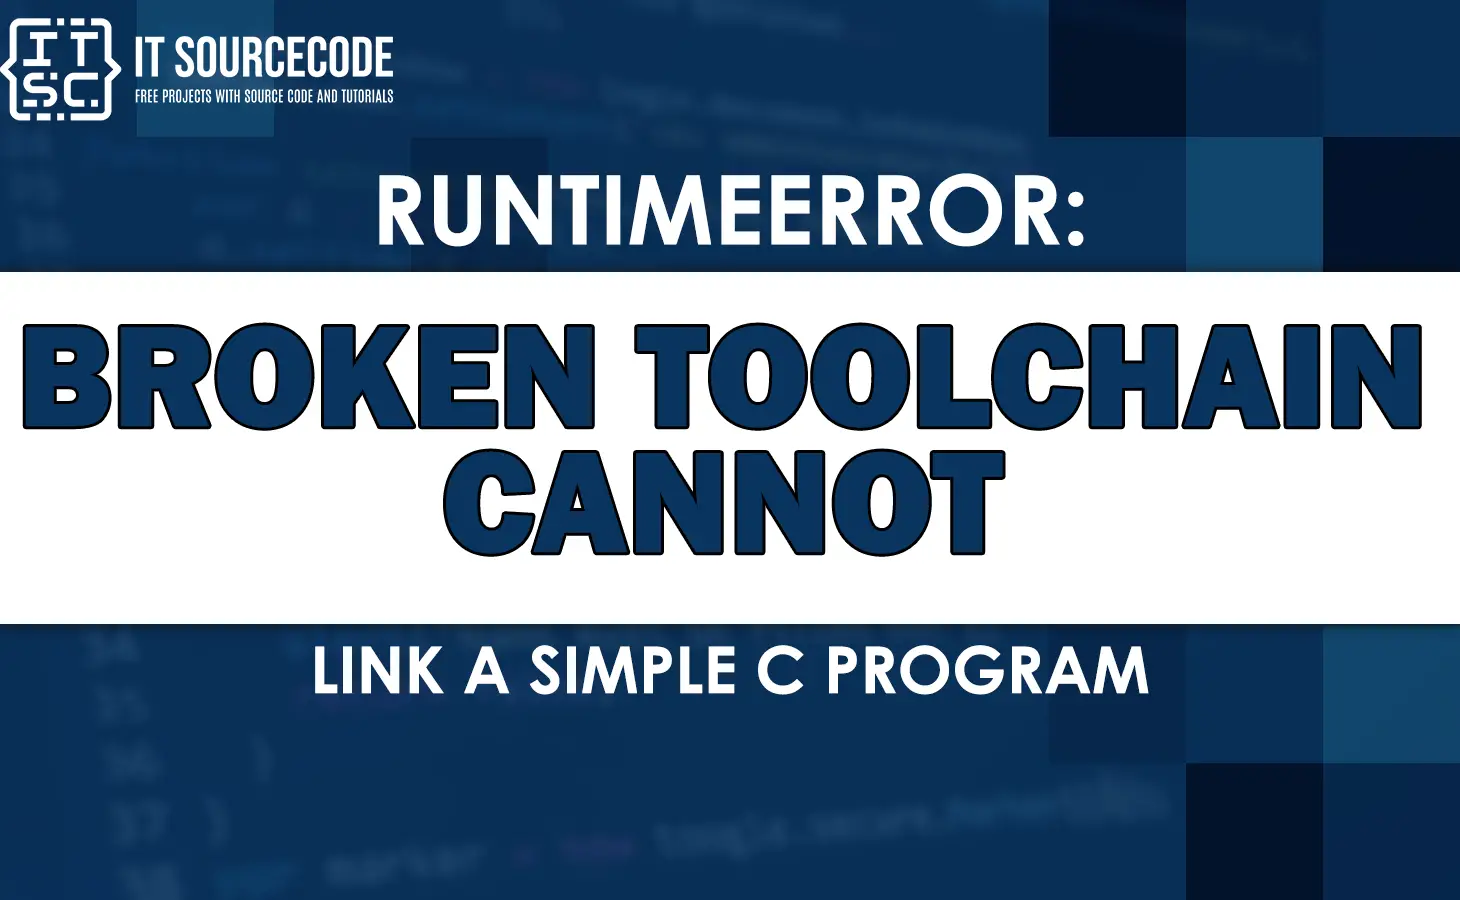 runtimeerror broken toolchain cannot link a simple c program